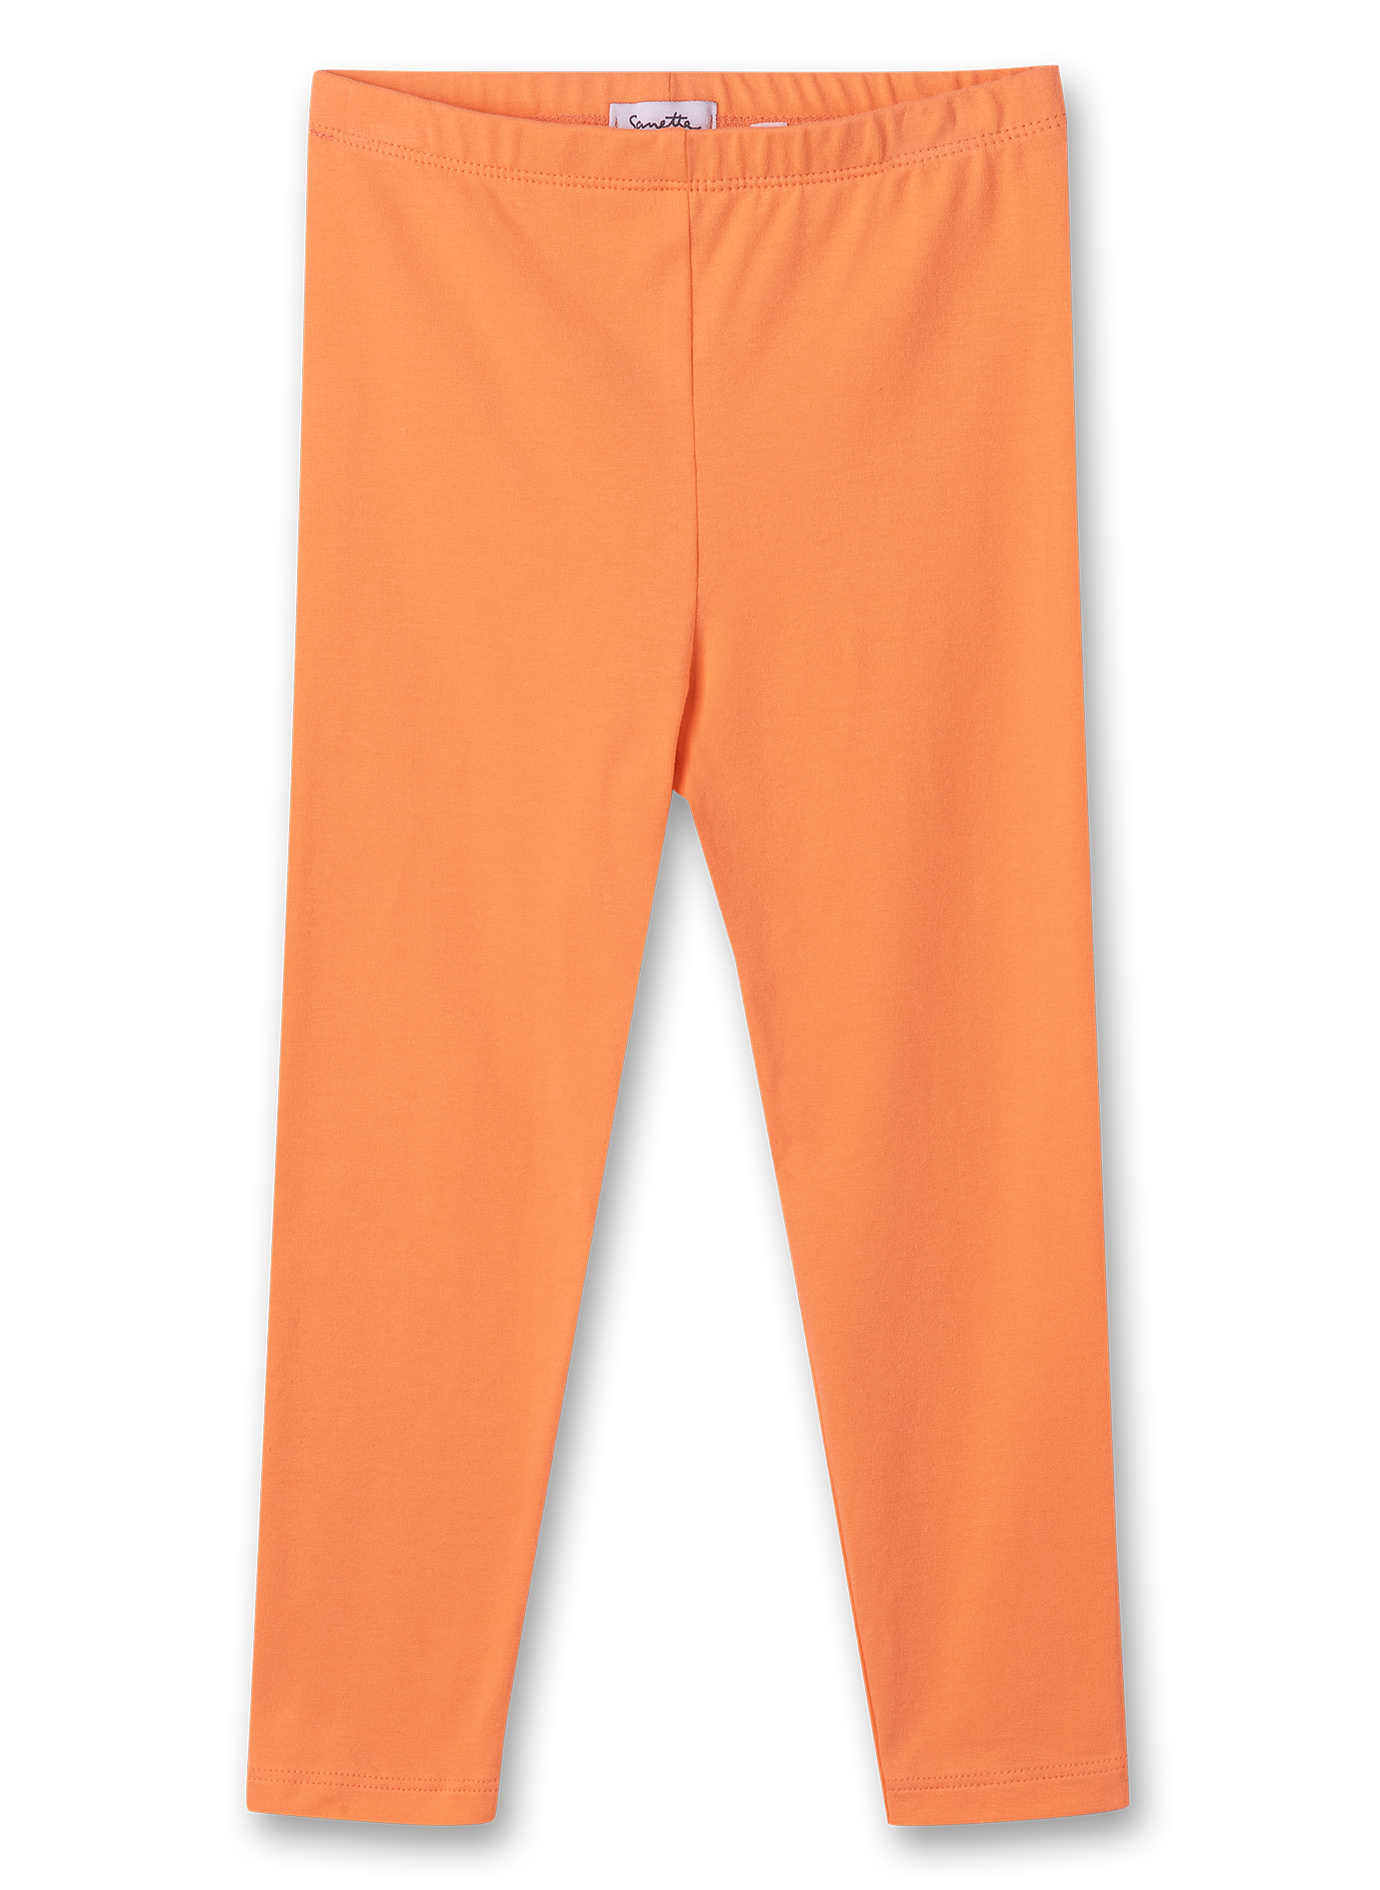 Mädchen-Leggings Orange